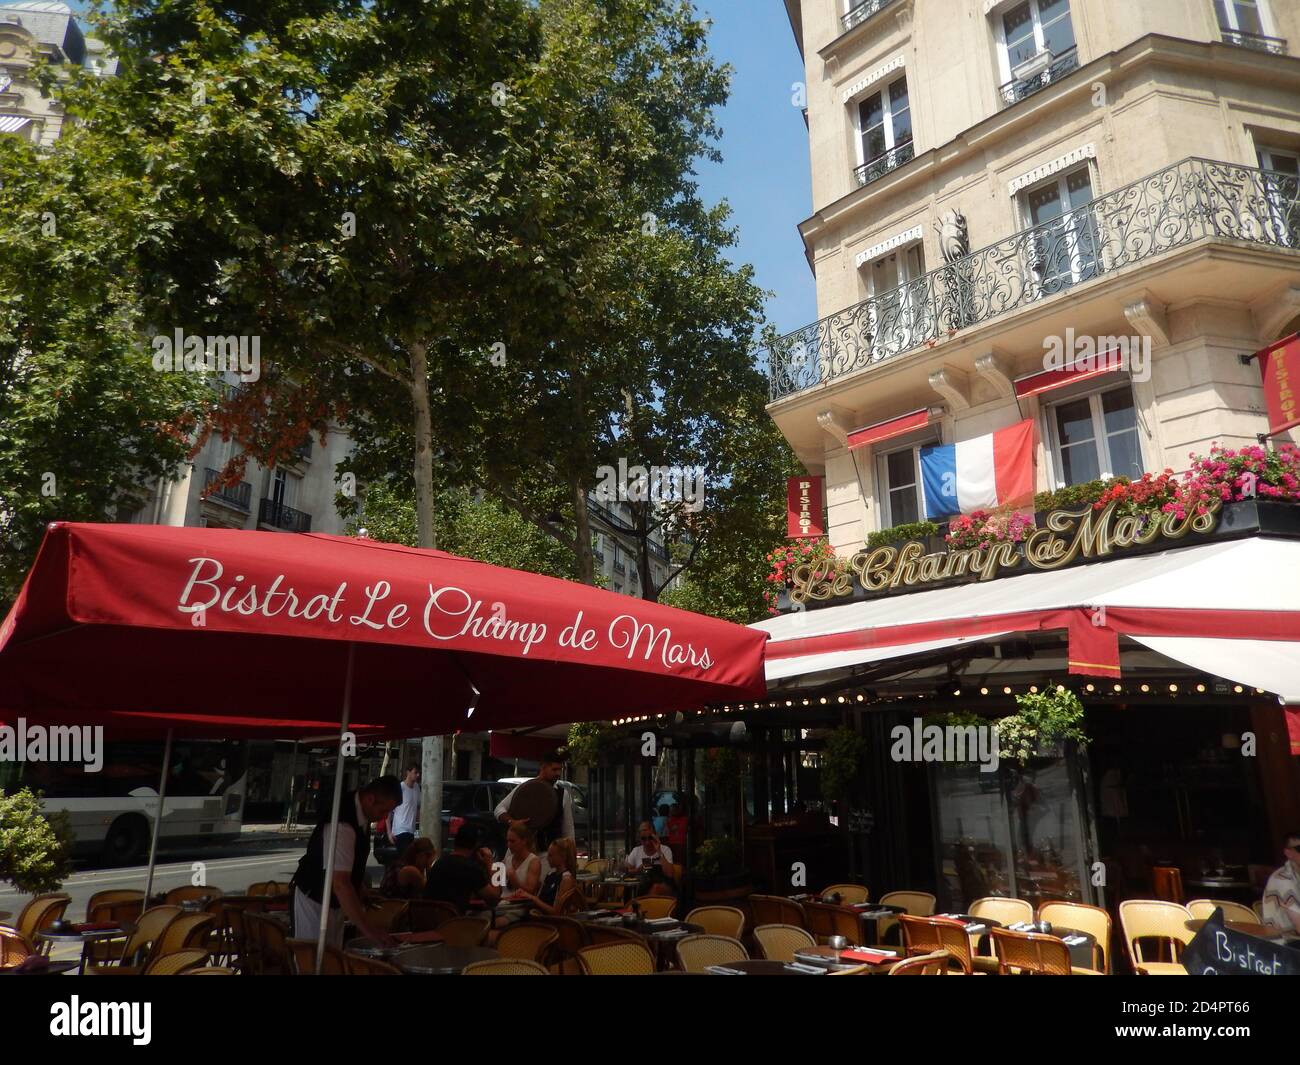 Parisian café called 'Bistrot Le Champ de Mars' Stock Photo